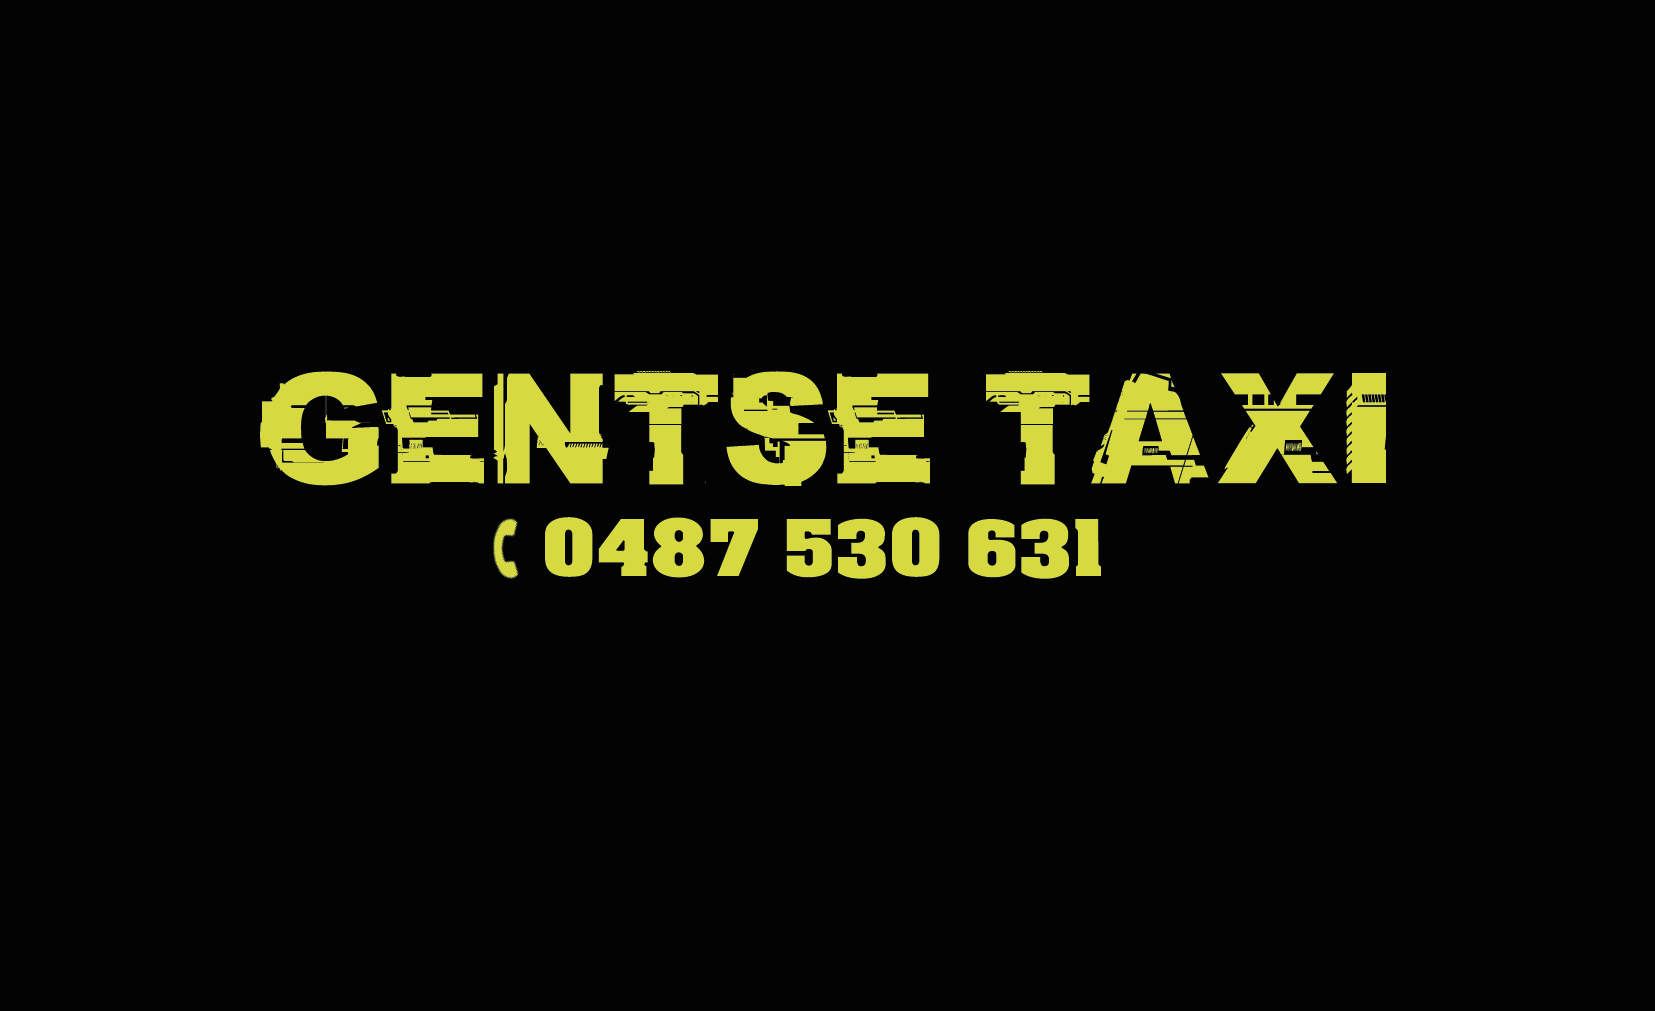 taxibedrijven met luchthavenvervoer Lokeren Gentse Taxi